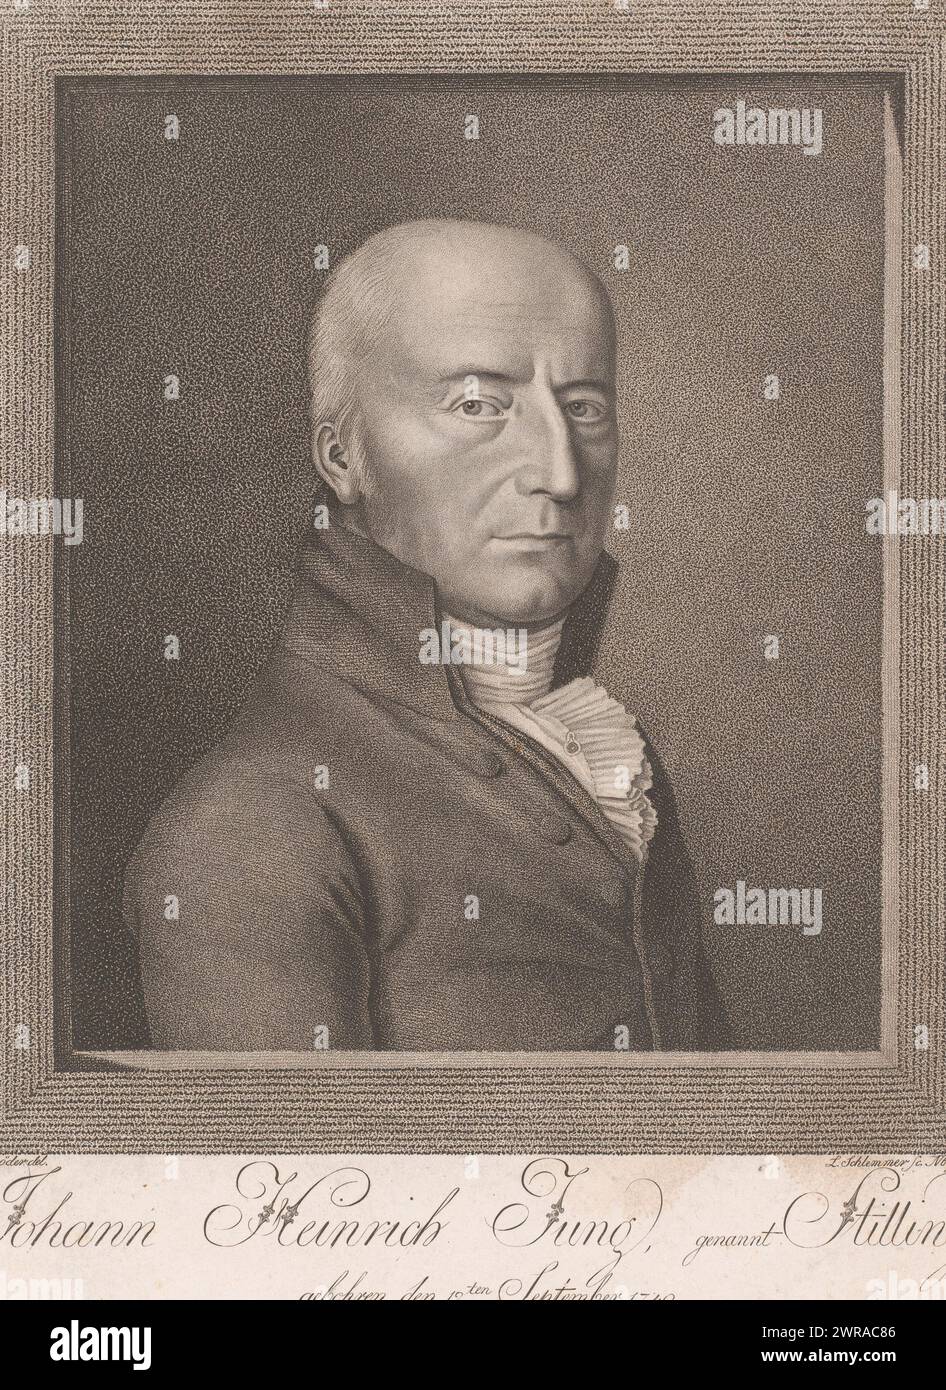 Portrait of Johann Heinrich Jung-Stilling, print maker: Leonhard Schlemmer, after drawing by: Johann Heinrich Schröder, Neurenberg, 1810, paper, height 303 mm × width 244 mm, print Stock Photo